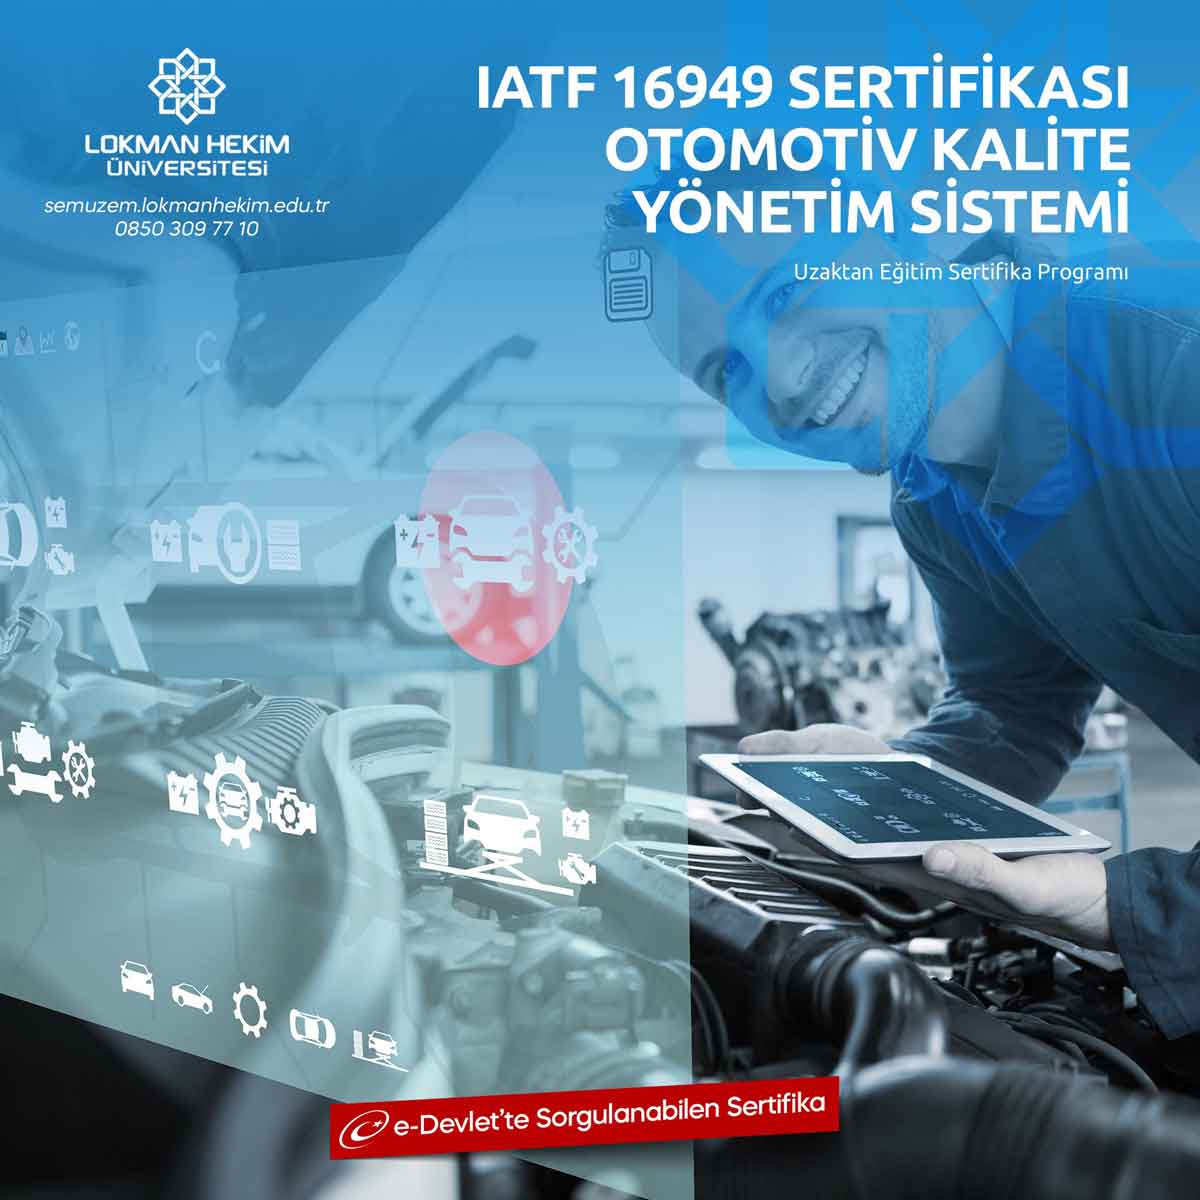 IATF 16949 Otomotiv Kalite Yönetim Sistemi Eğitimi Nedir